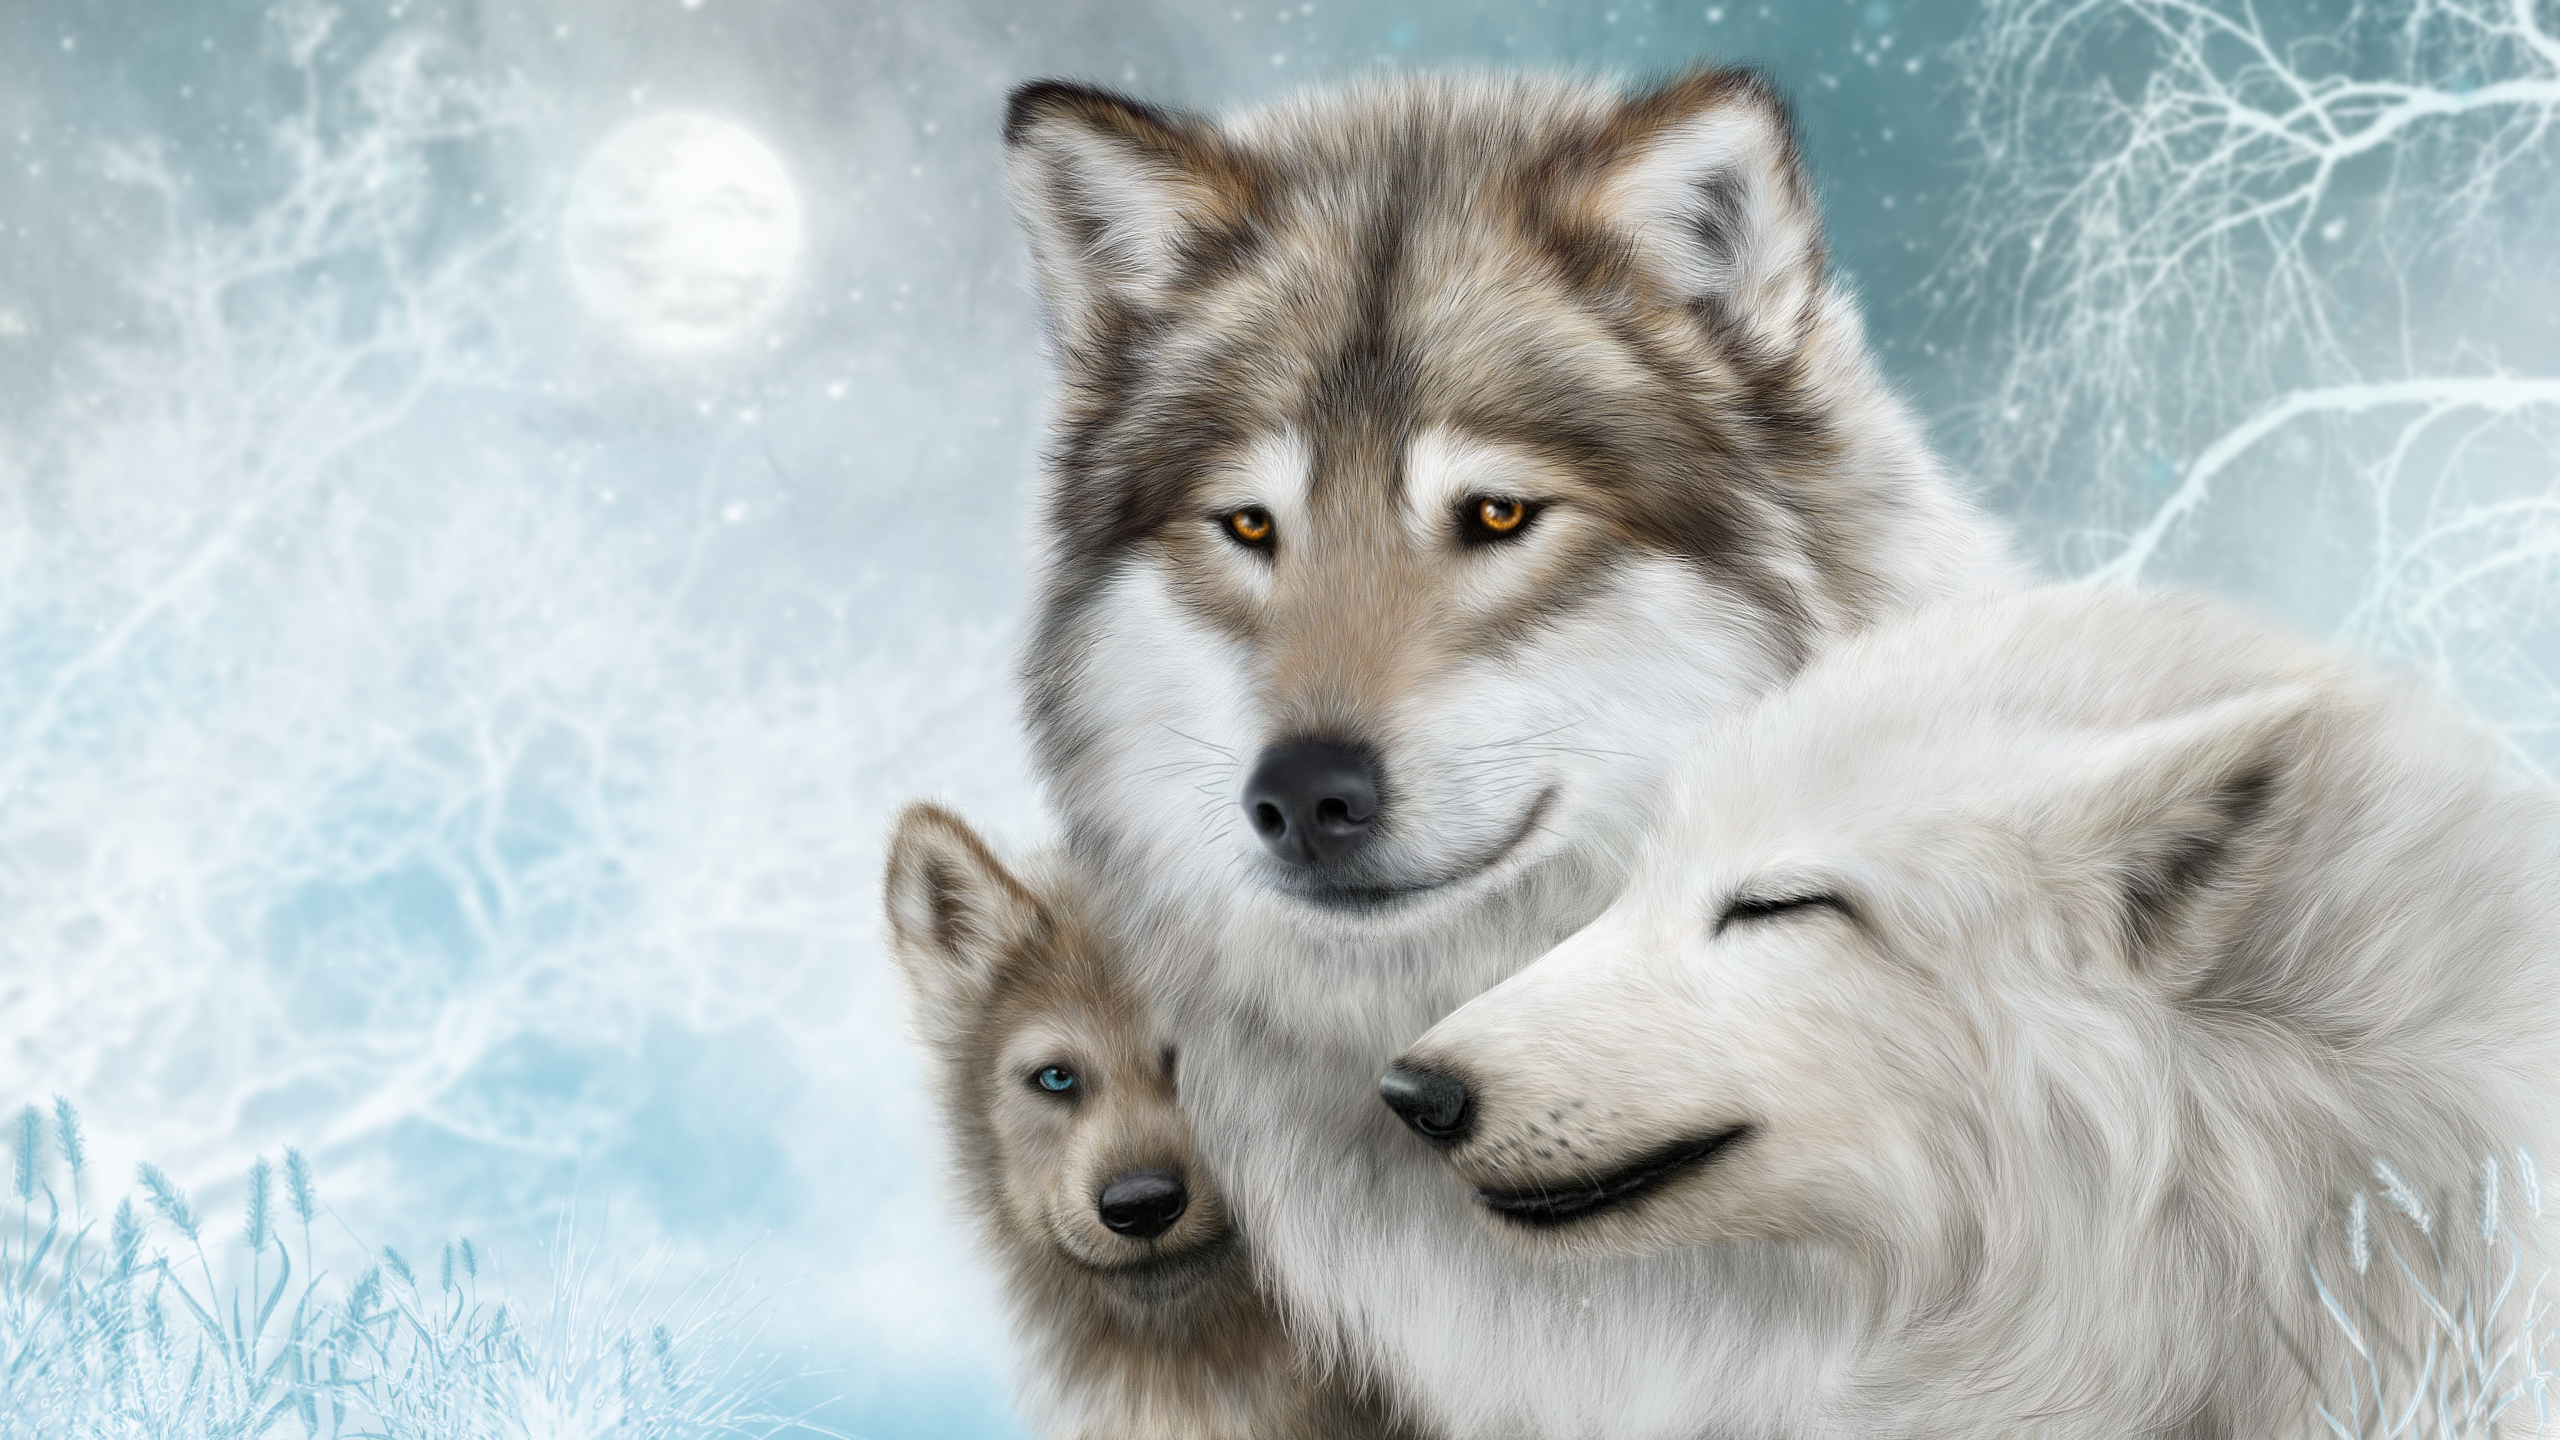 Wolf Snow Winter Animals White Mammals Artwork 2560x1440